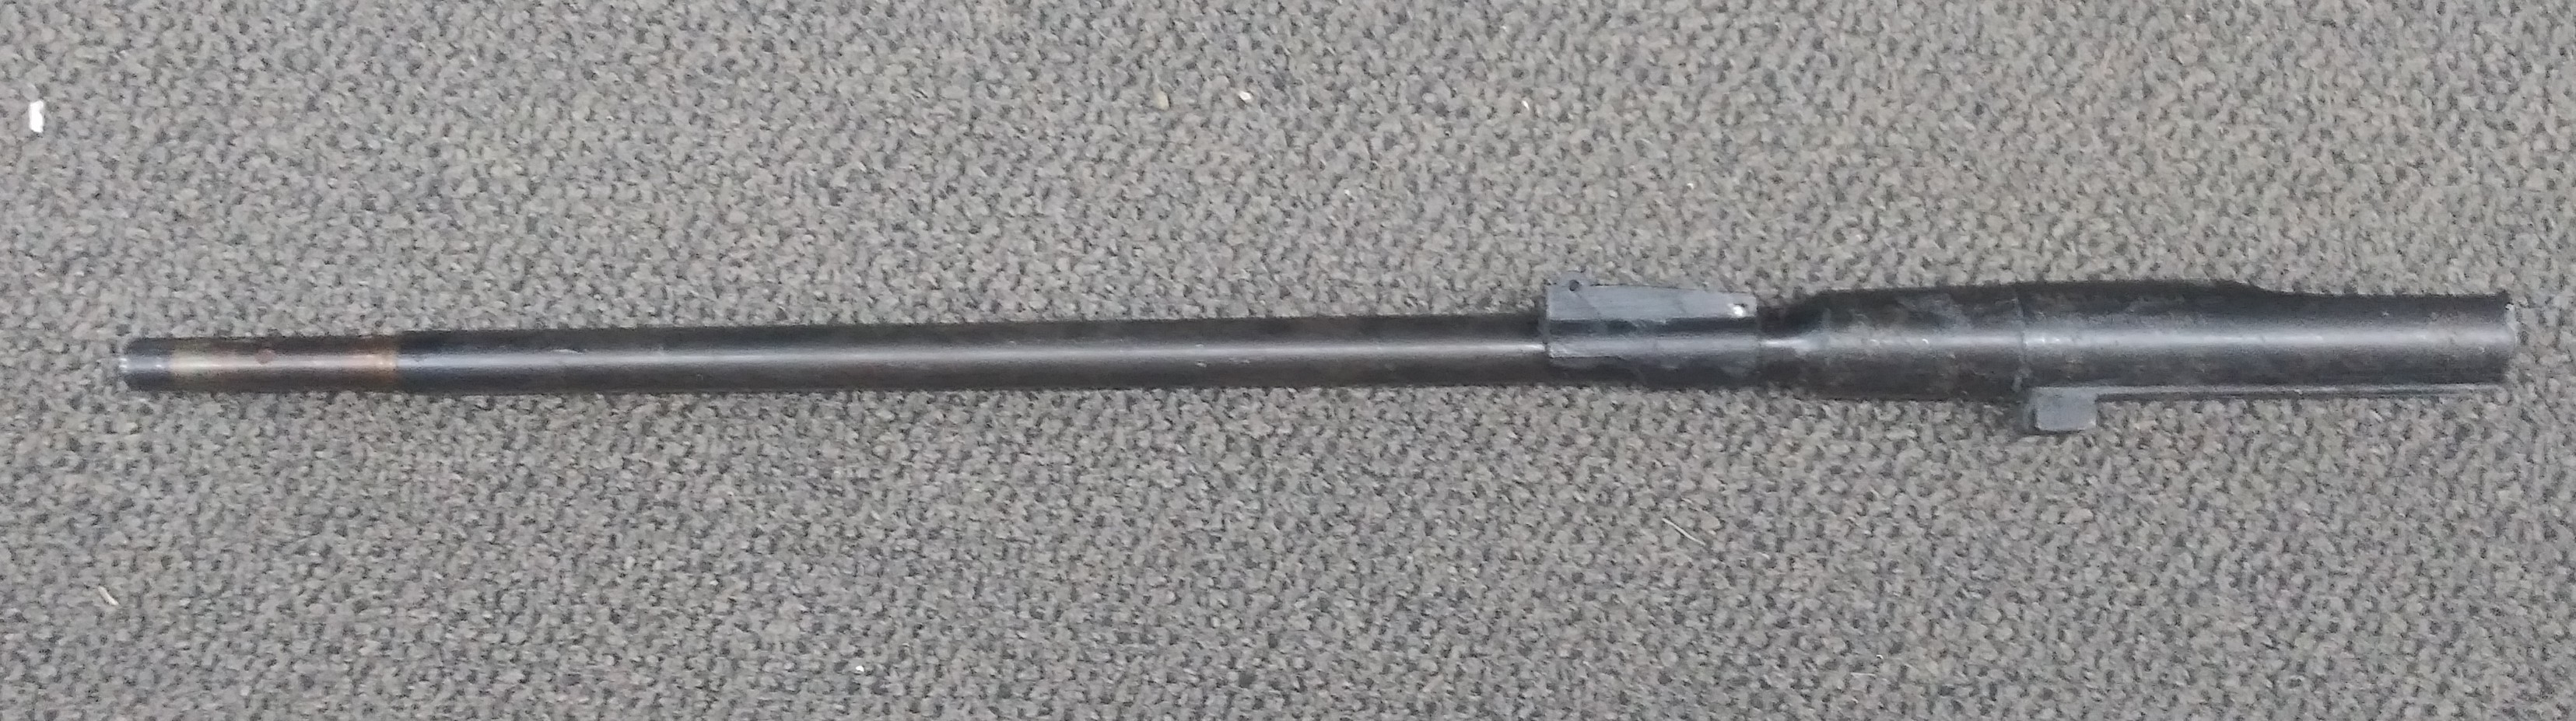 1945 IZHVESK M1944 VG+ BORE - Mosin Nagant Rifle